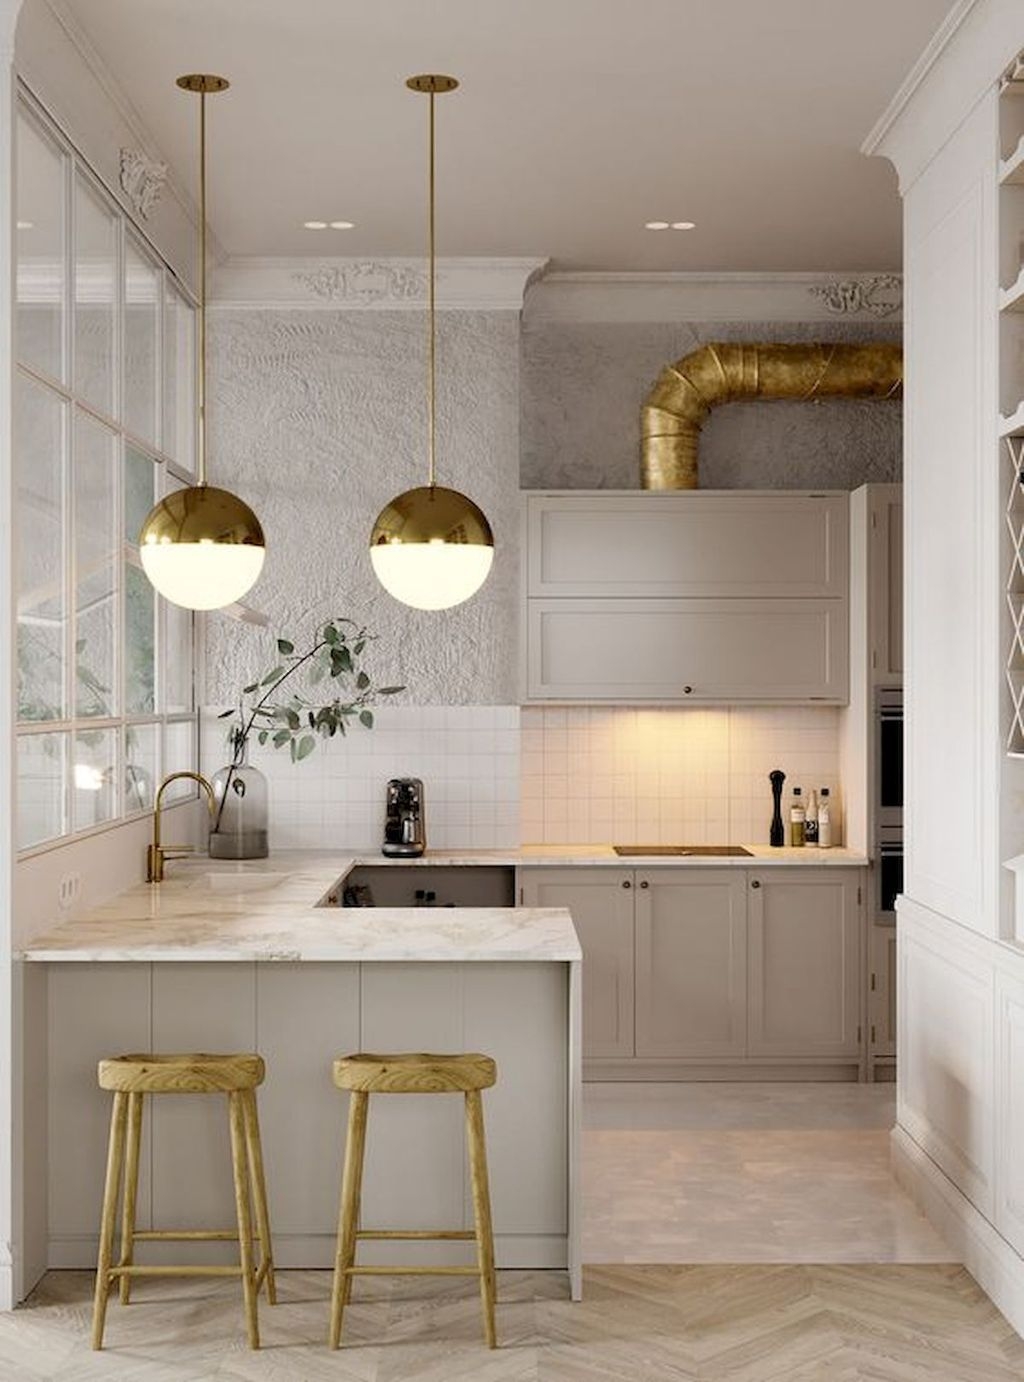 Elegant Modern Kitchen Decoration Ideas That Trend For 2019 22